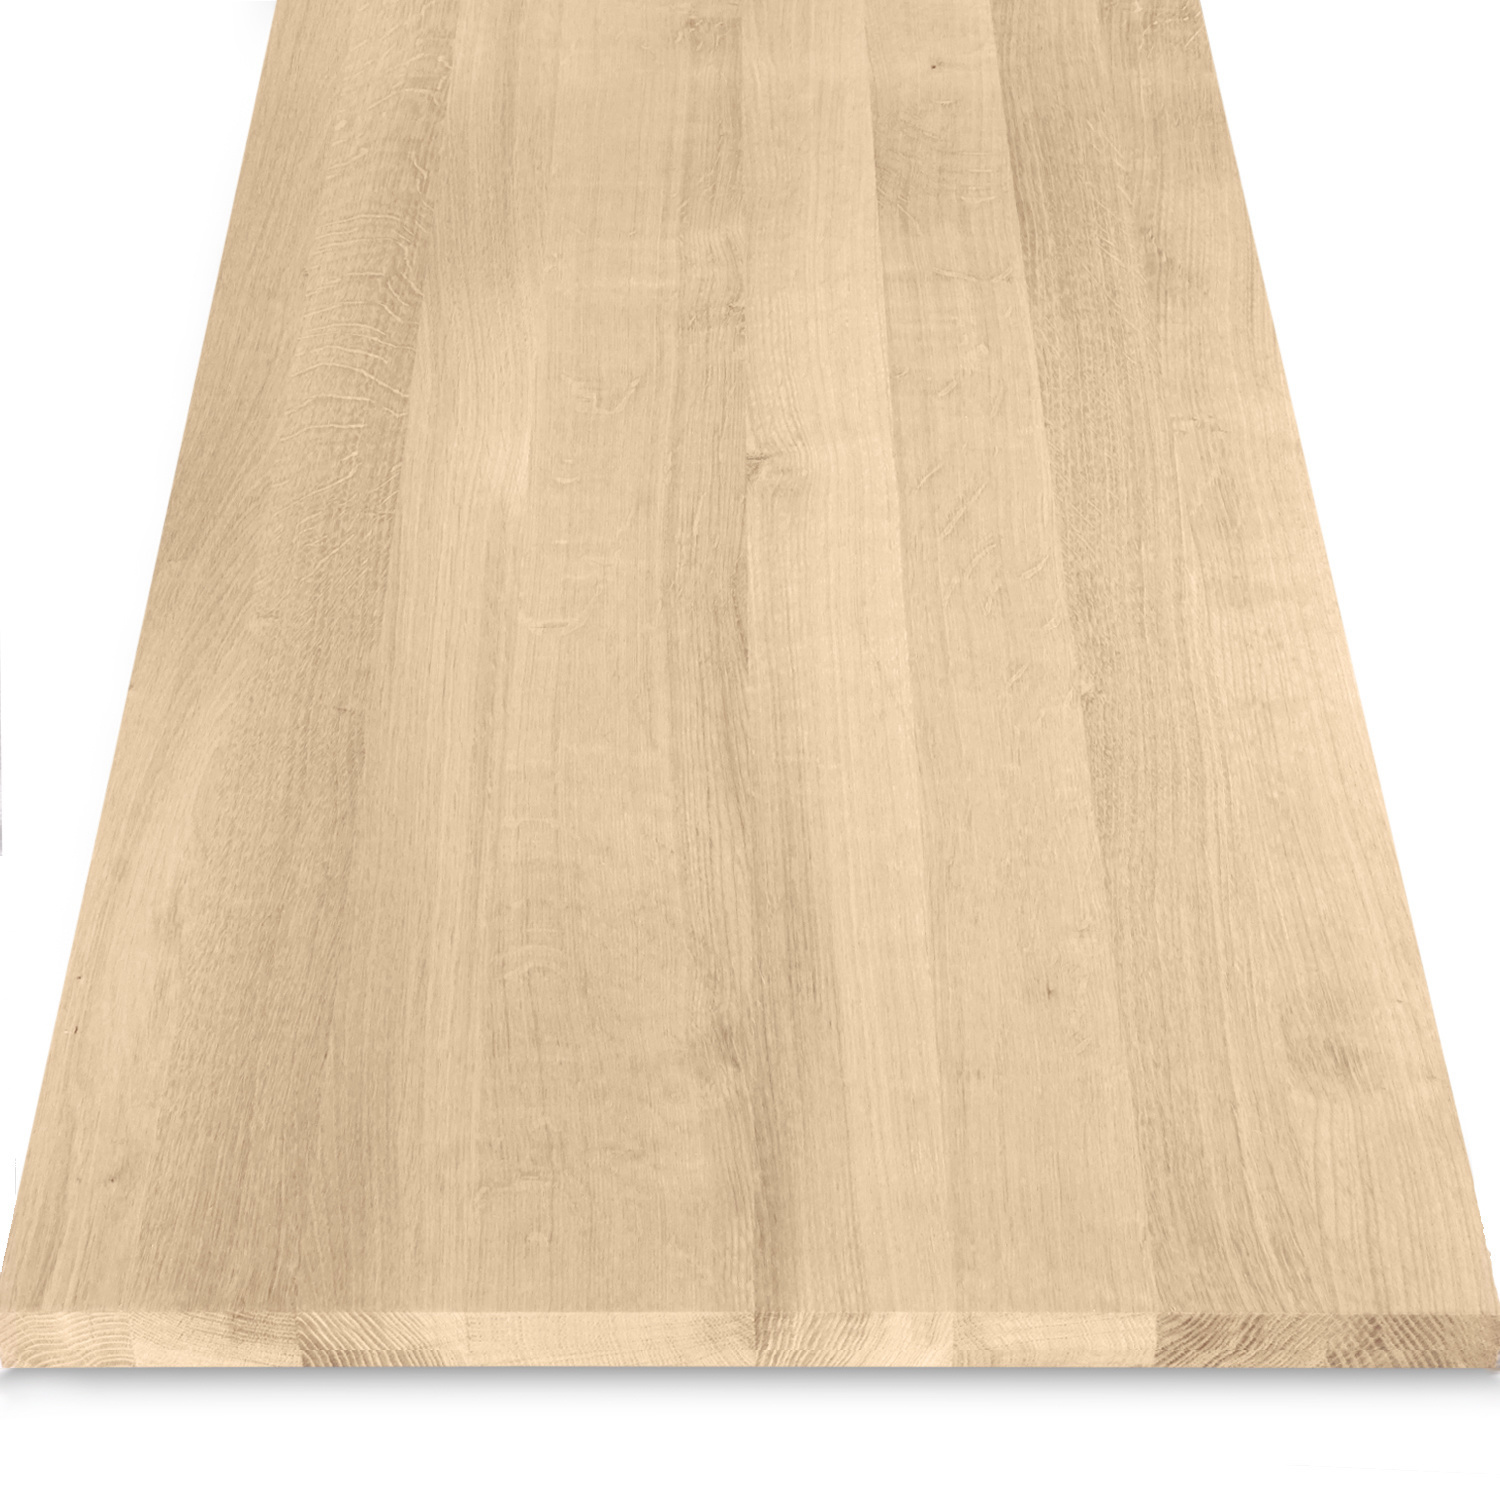  Leimholzplatte Eiche nach Maß - 2,3 cm dick - Eichenholz A-Qualität- Eiche Massivholzplatte - verleimt & künstlich getrocknet (HF 8-12%) - 15-120x20-350 cm